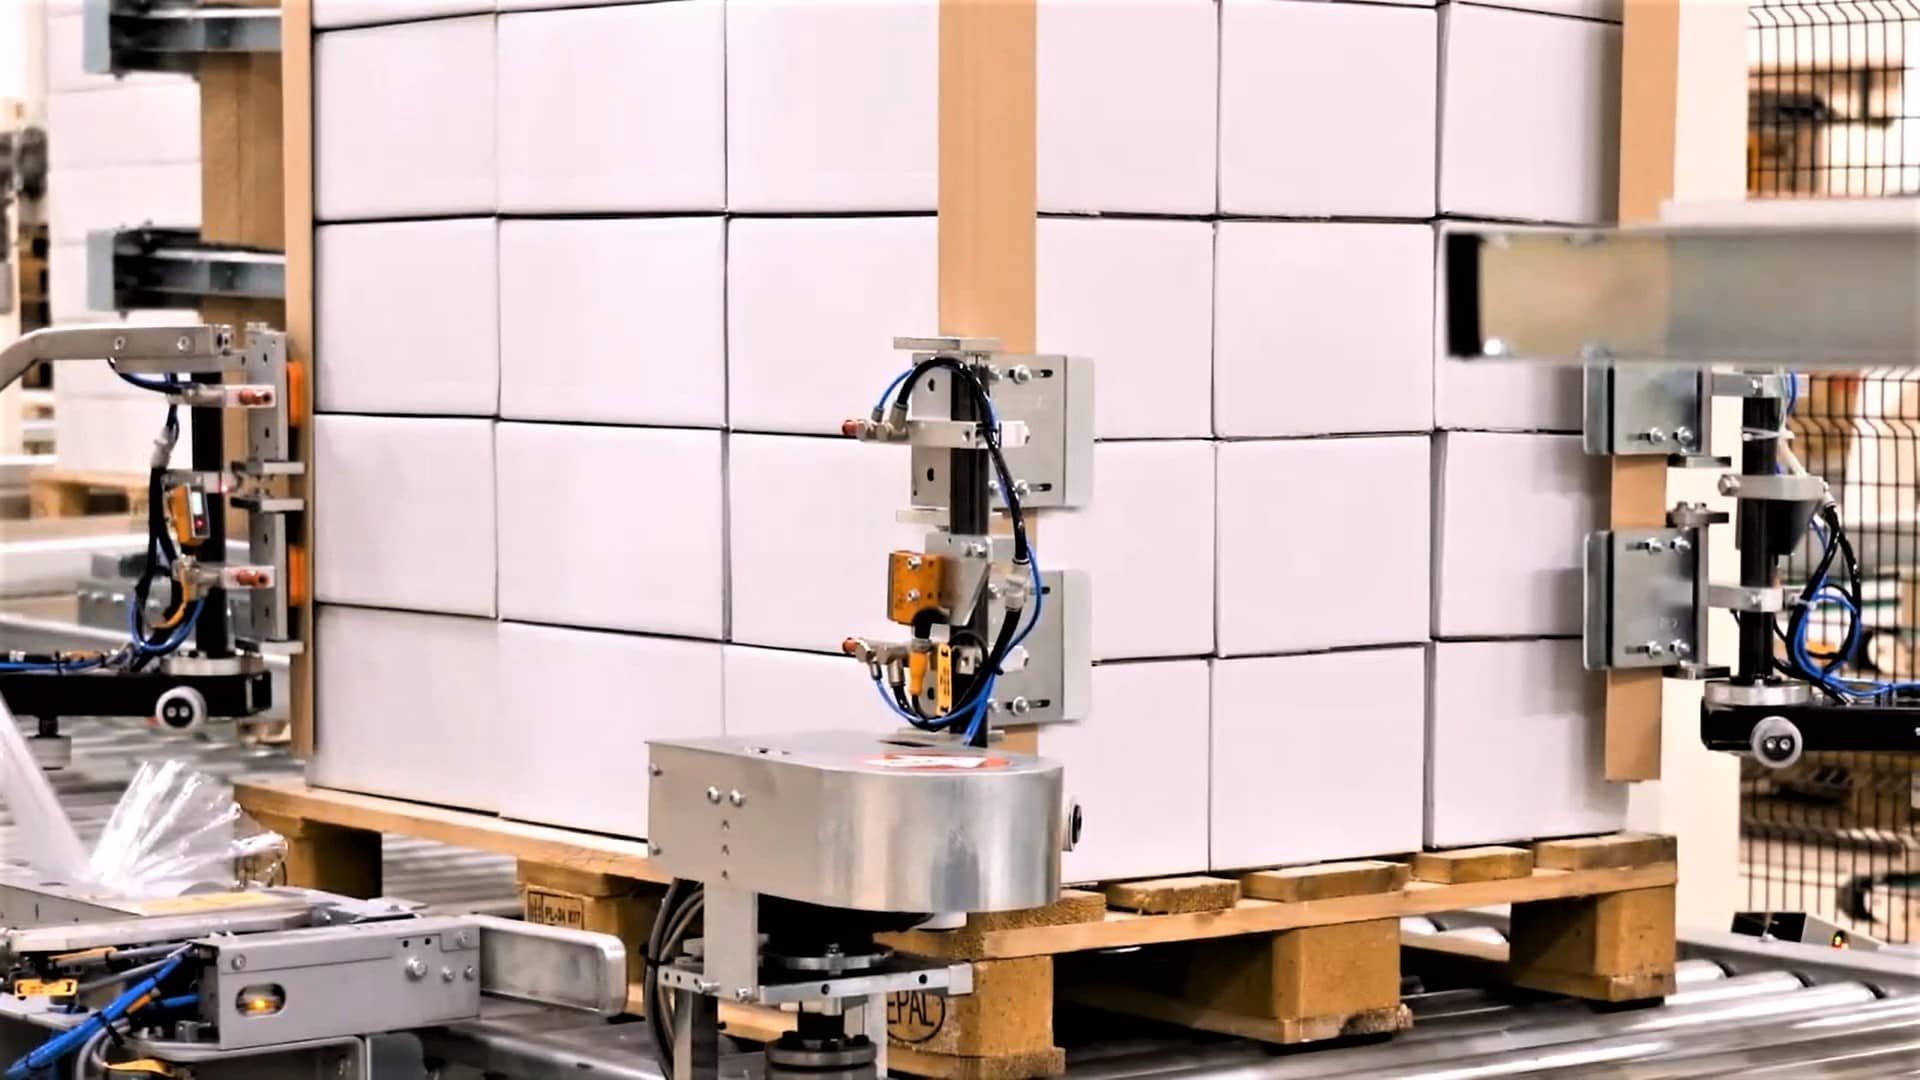 Пао блоки. Паллетообмотчик Робопак. Паллетизатор поддонов. MASTERWRAP Plus XL Robopac. Конструкция робота упаковщика.